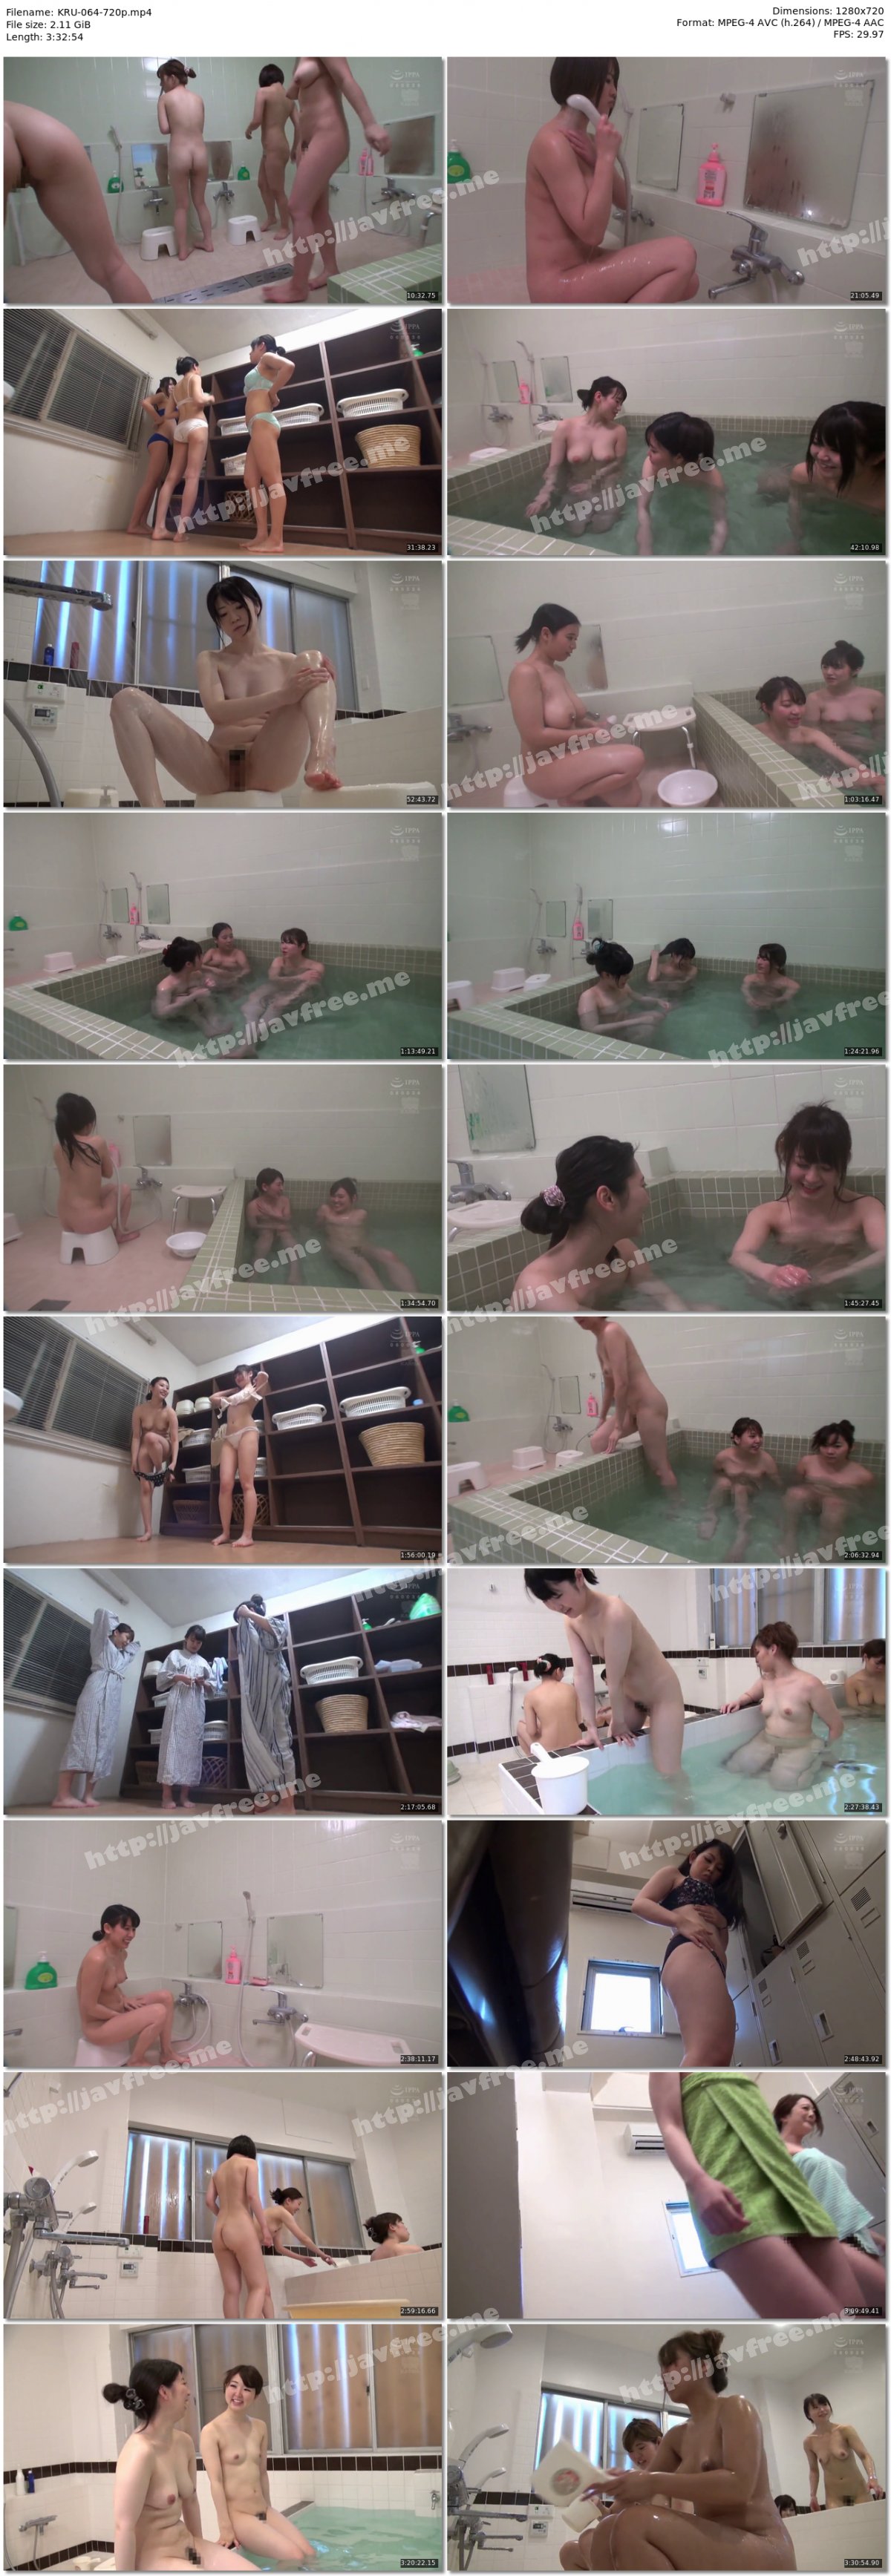 [HD][KRU-064] 関東圏某入浴施設潜入高画質盗撮 女風呂盗撮エロ動画